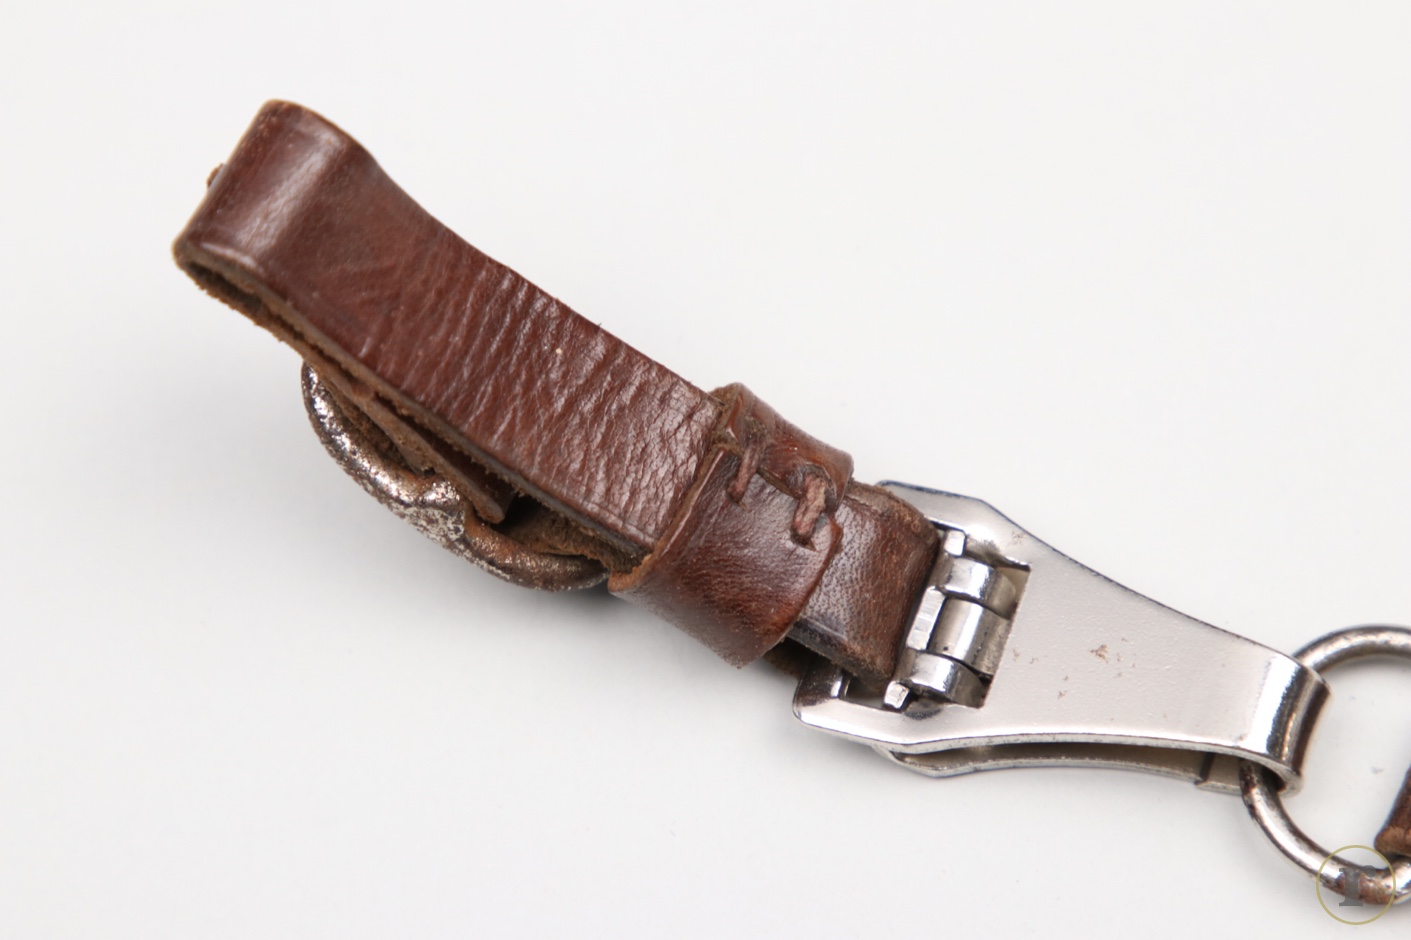 ratisbon's | SA Service Dagger hanger with belt loop | DISCOVER GENUINE ...